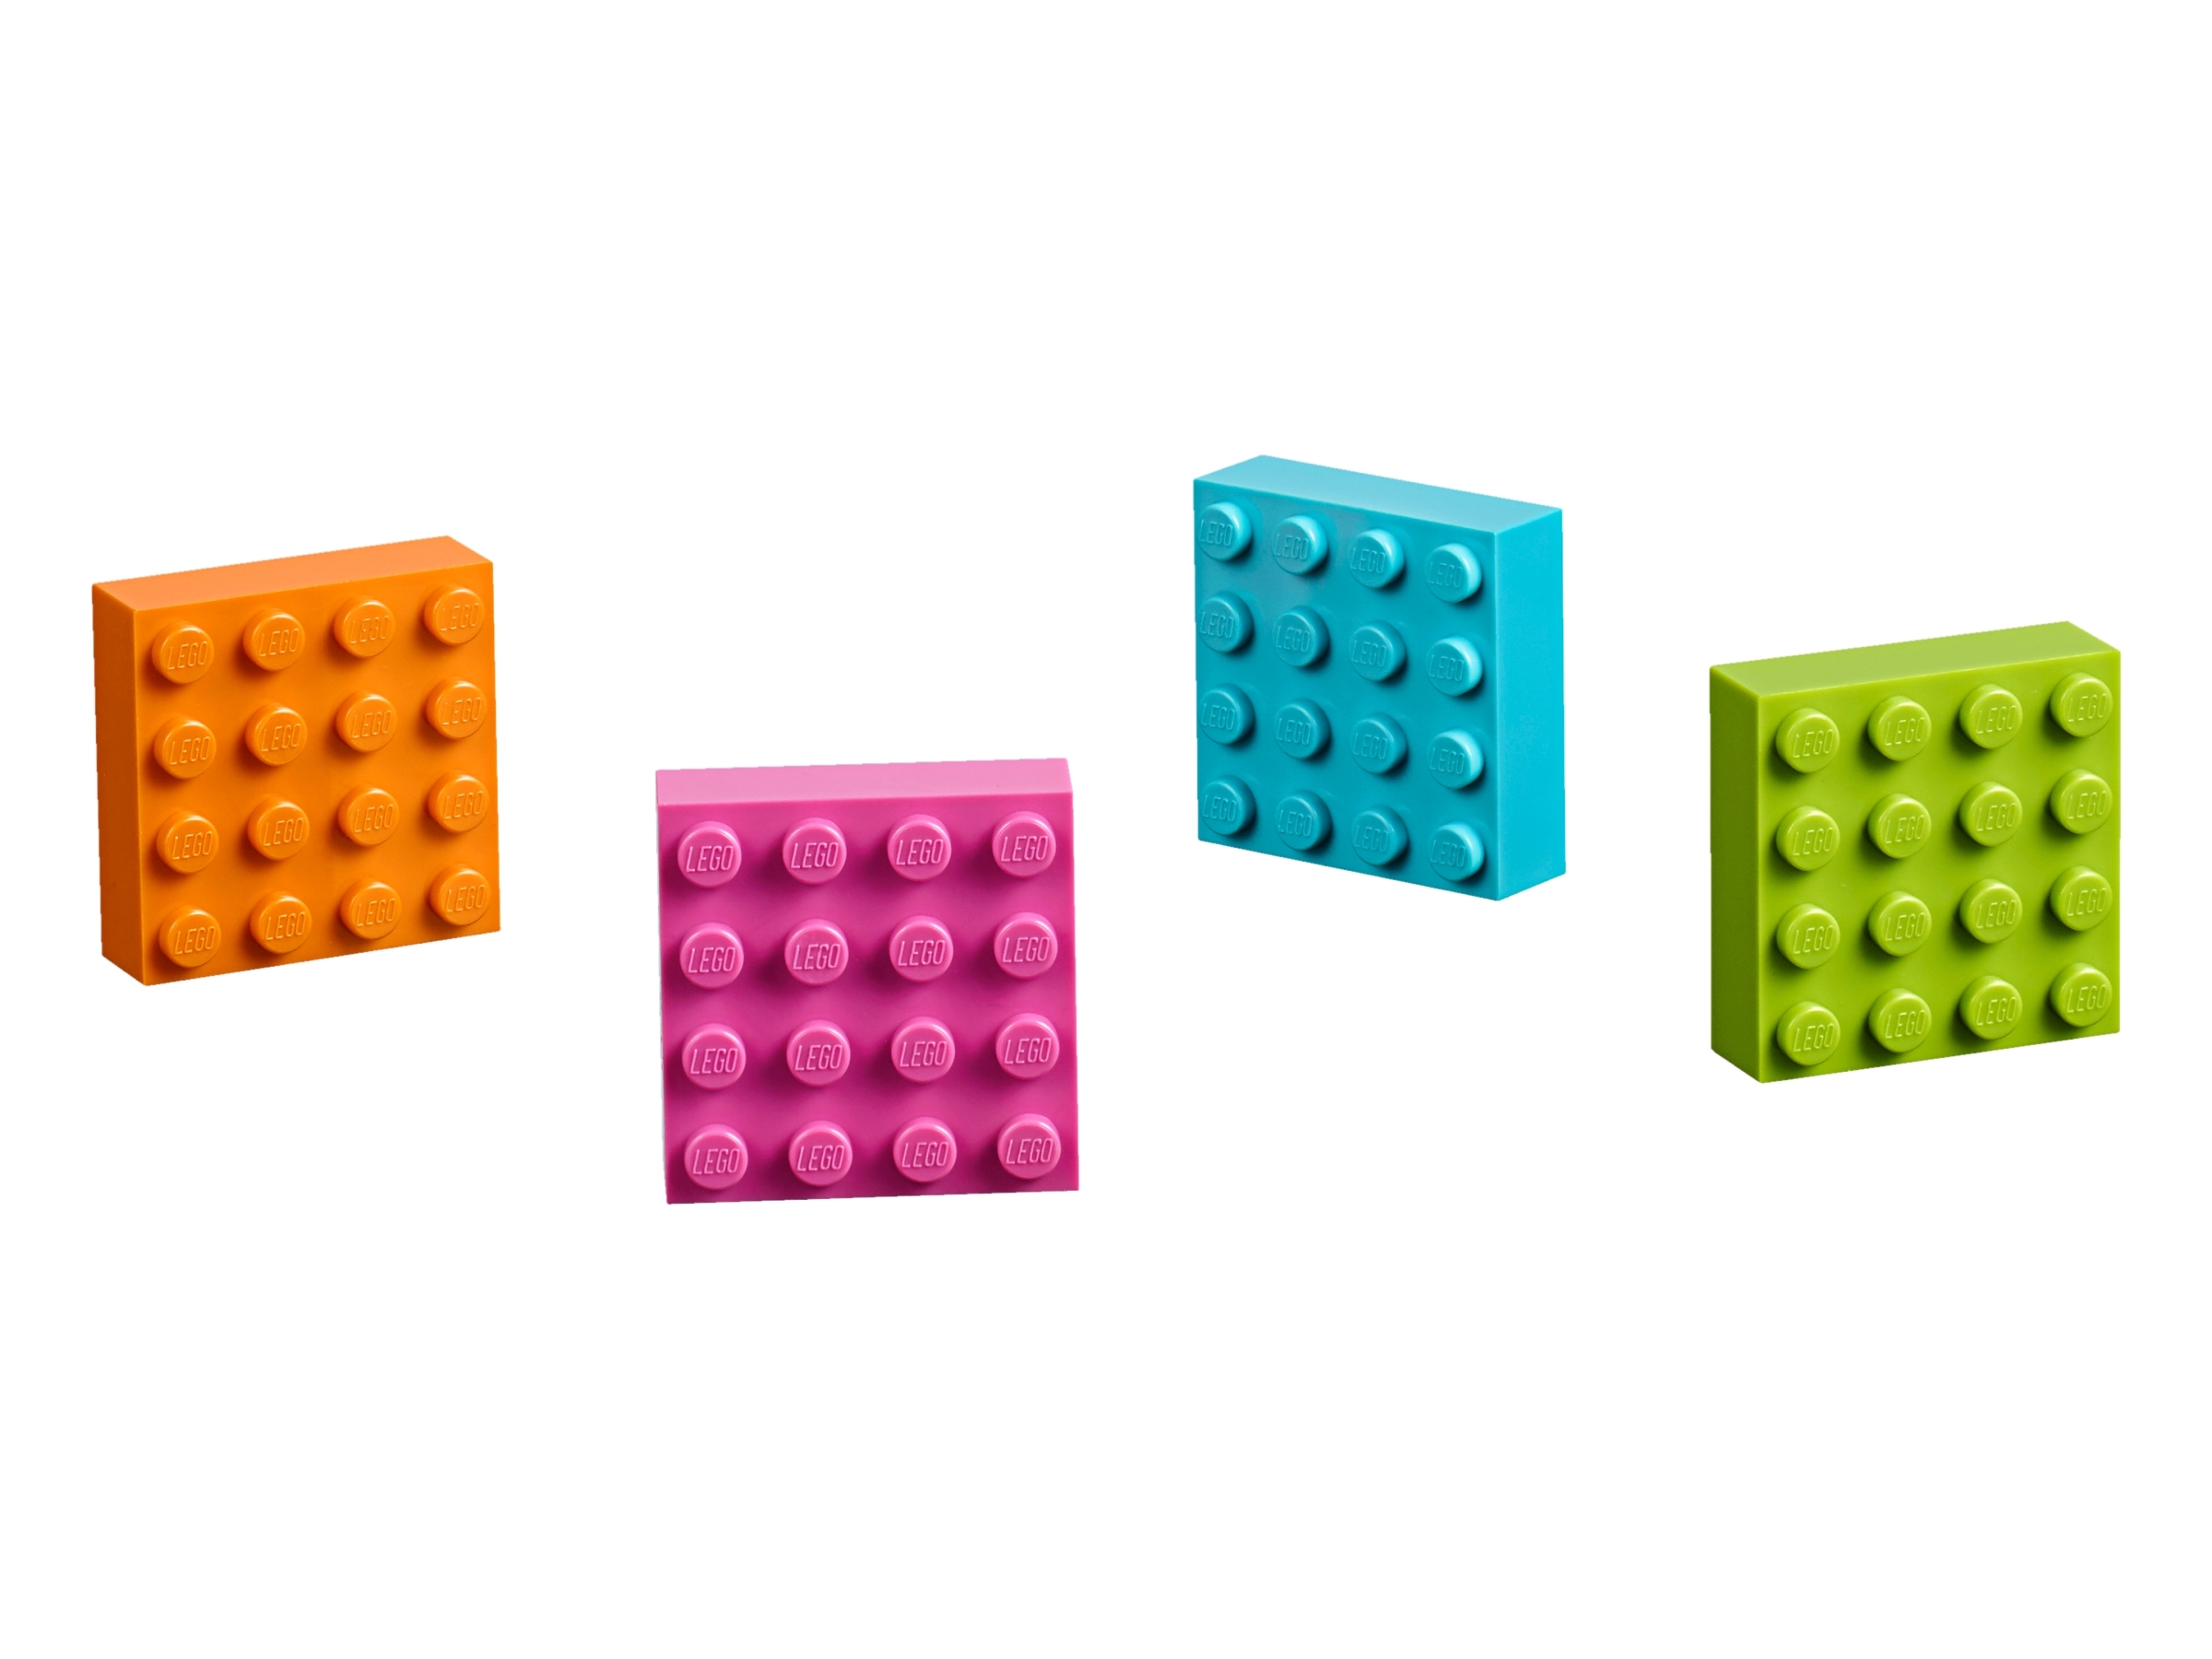 Brique aimant Brick magnet 2x2 2x4 choose color 30160 3003m NEUF NEW Lego 